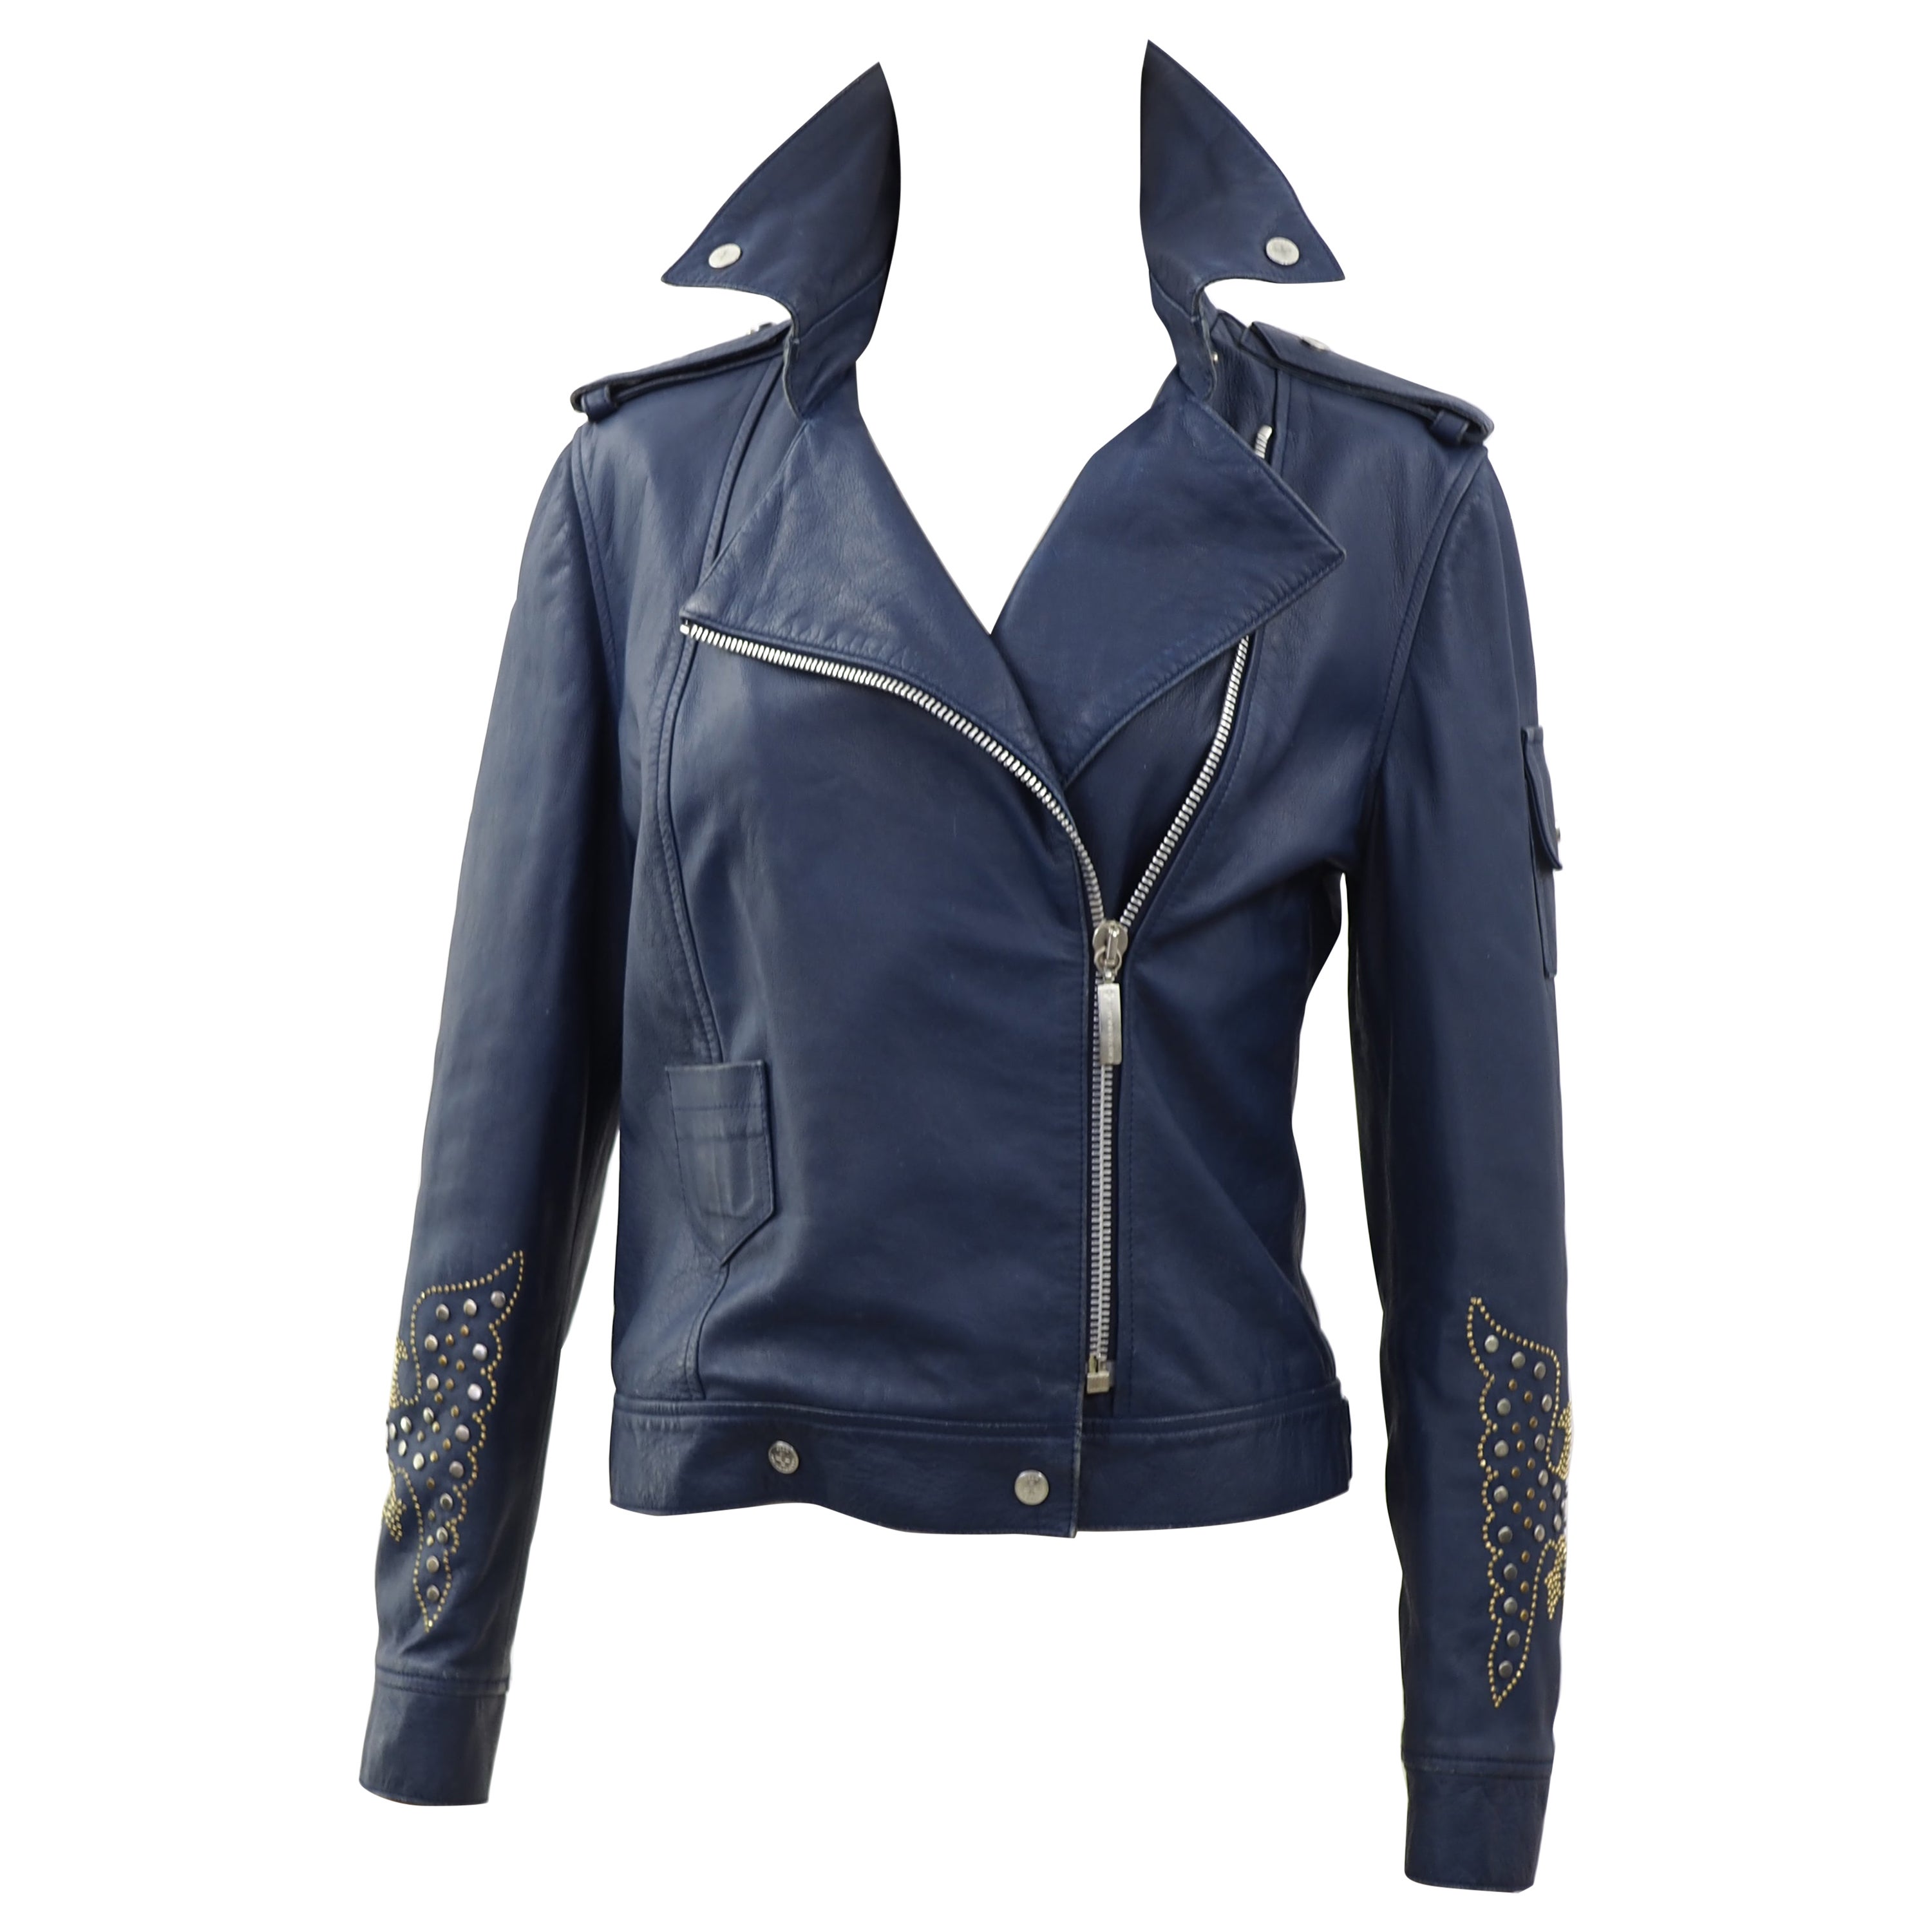 J. C. de Castelbajac blue leather jacket